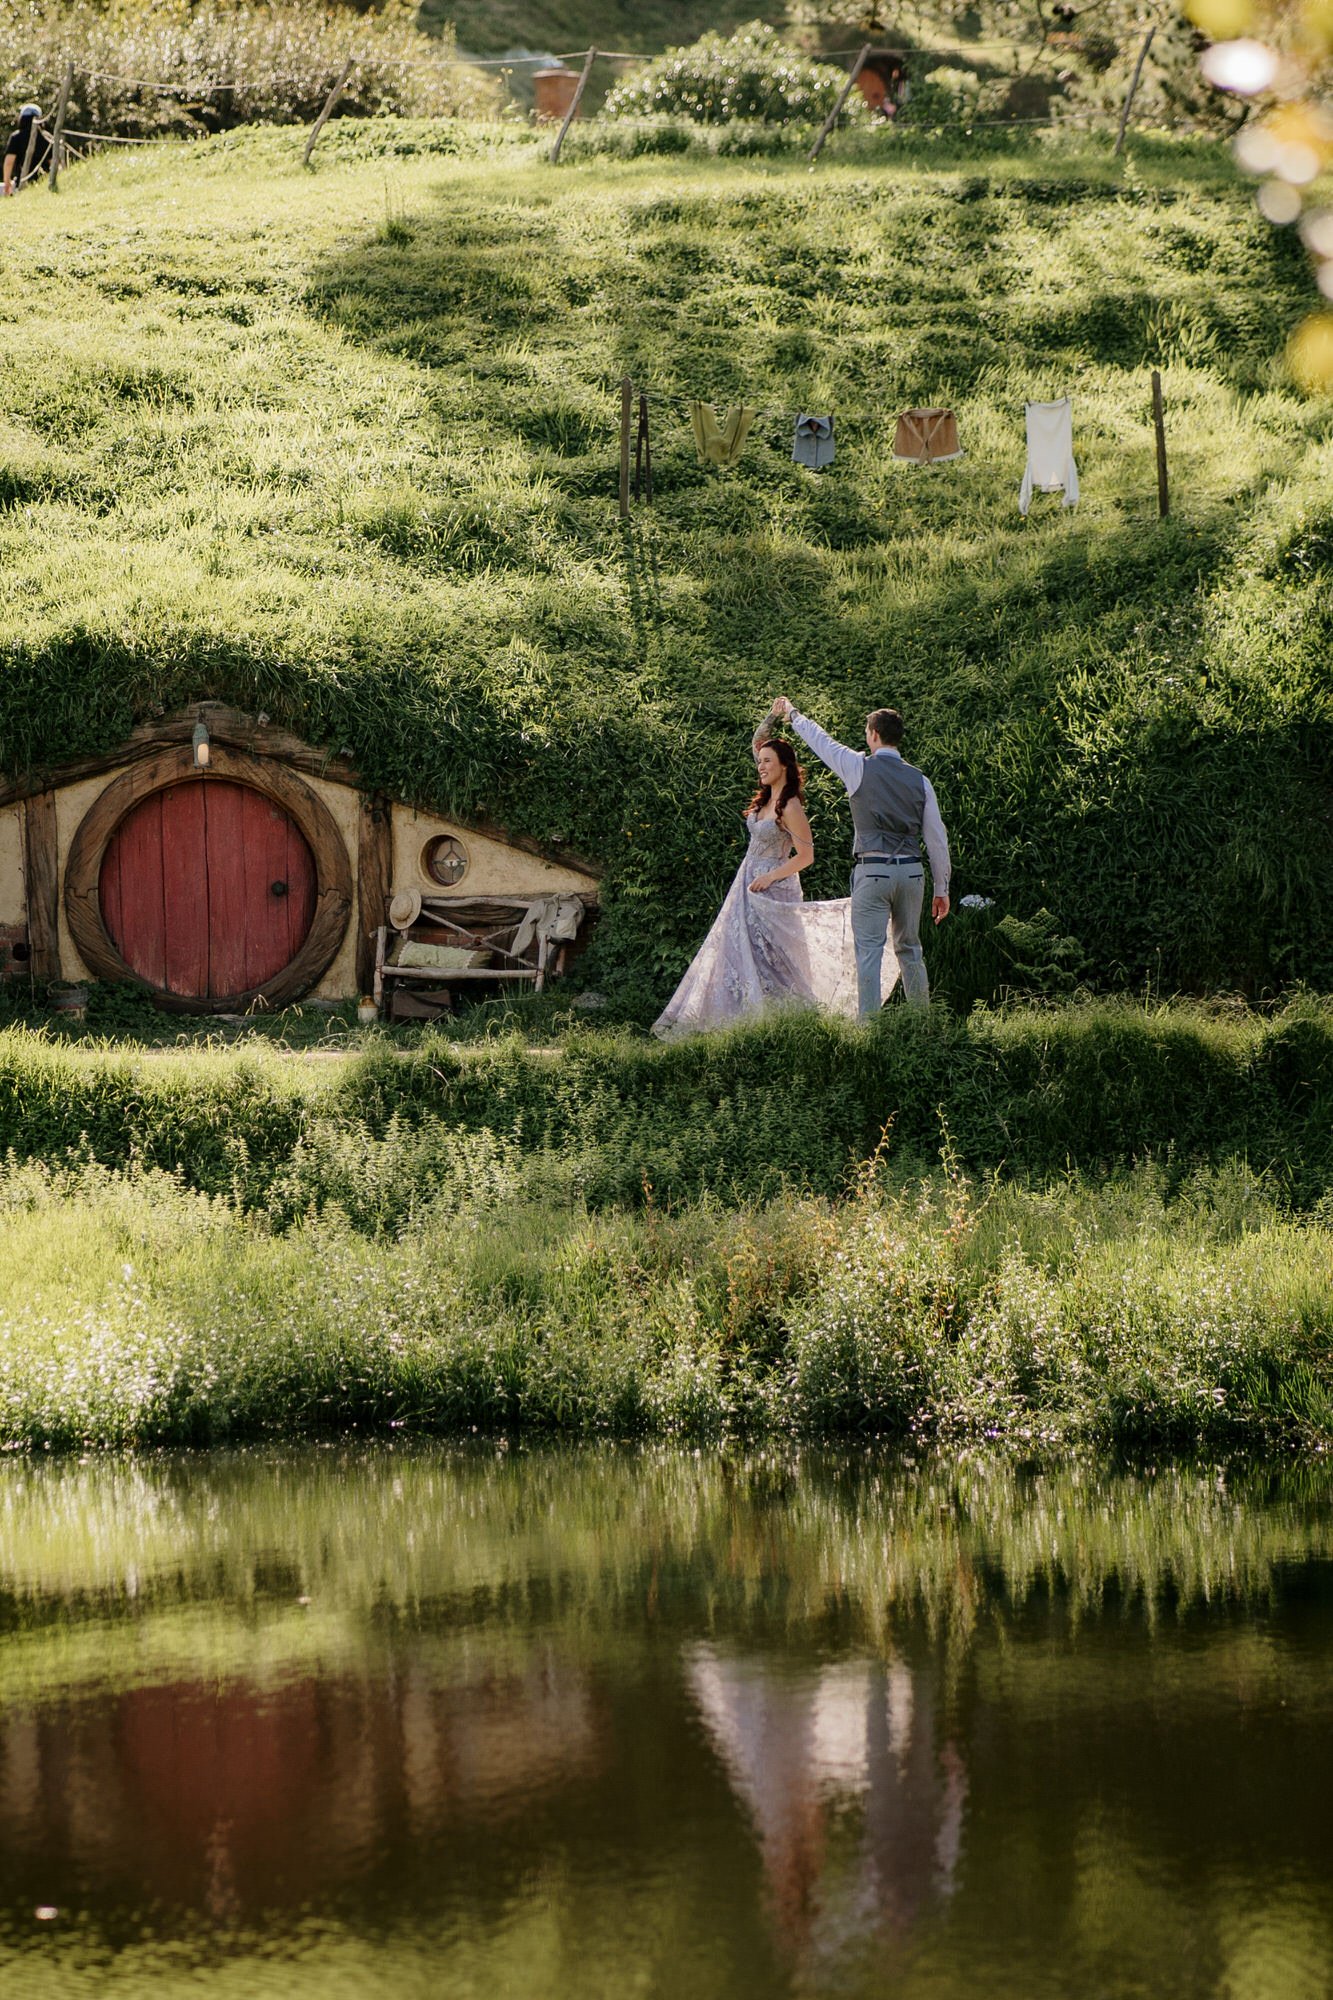 hobbiton-tour-matamata-best-wedding-venue-top-photographer-auckland-videography-elopement-unique-hobbit-destination-dear-white-productions (167).JPG